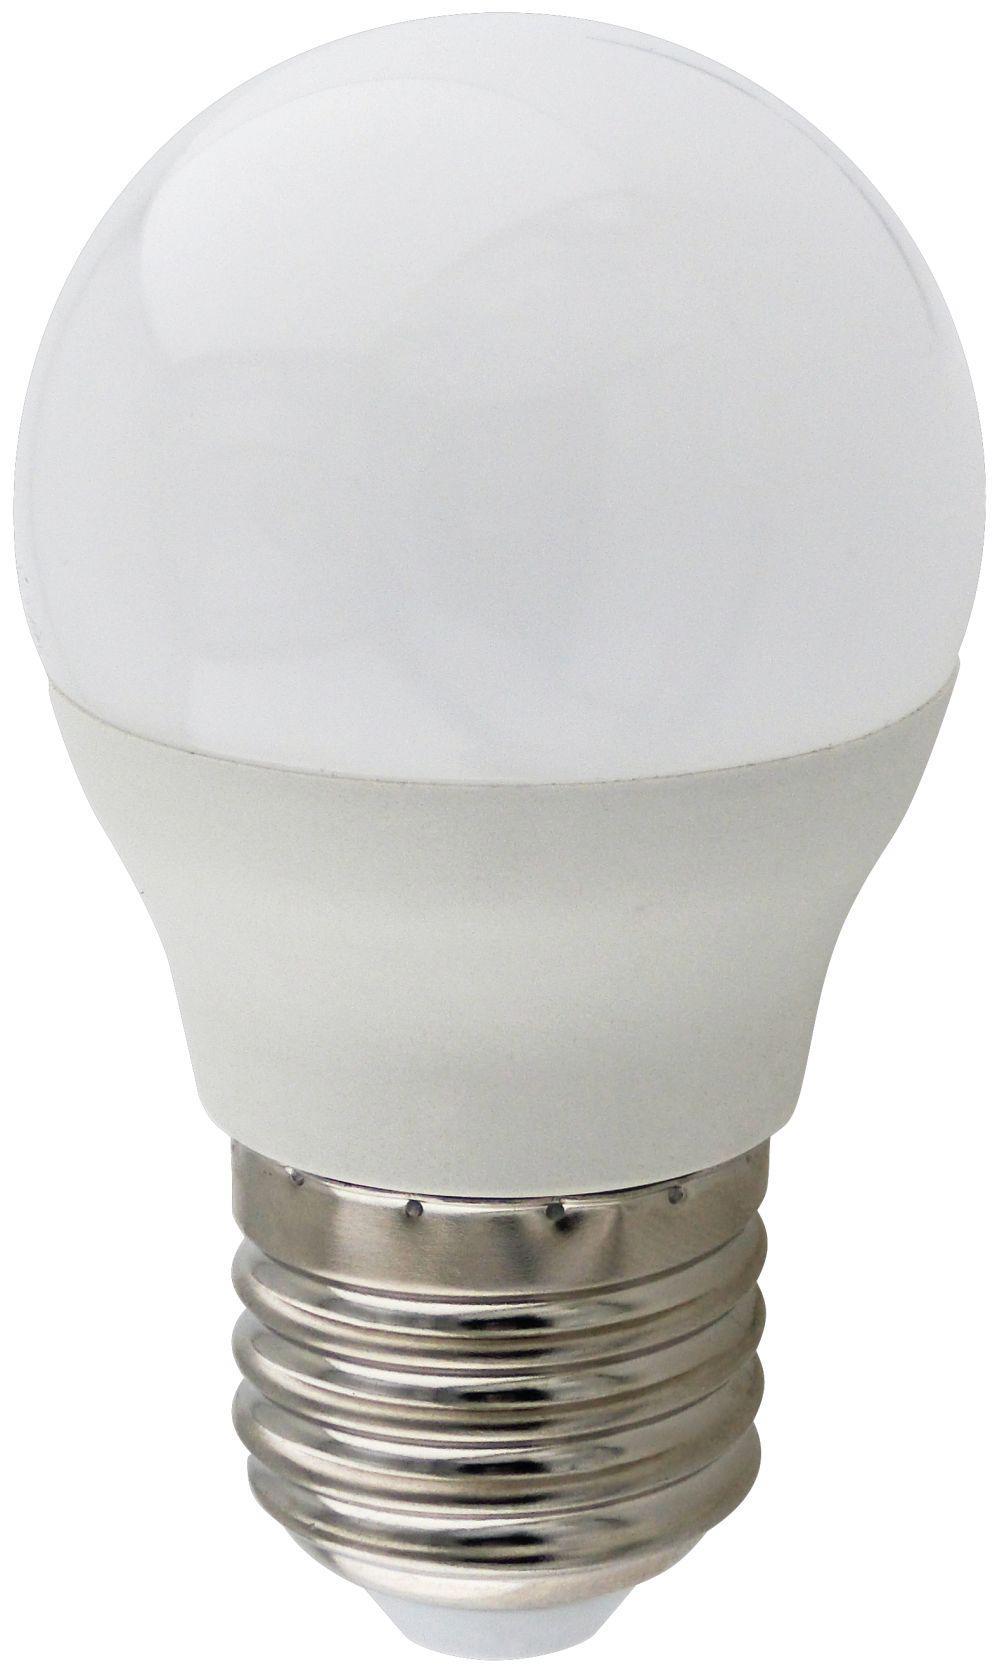 90121397 Лампа Premium светодионая E27 7 Вт шар 560 Лм холодный свет STLM-0112523 ECOLA